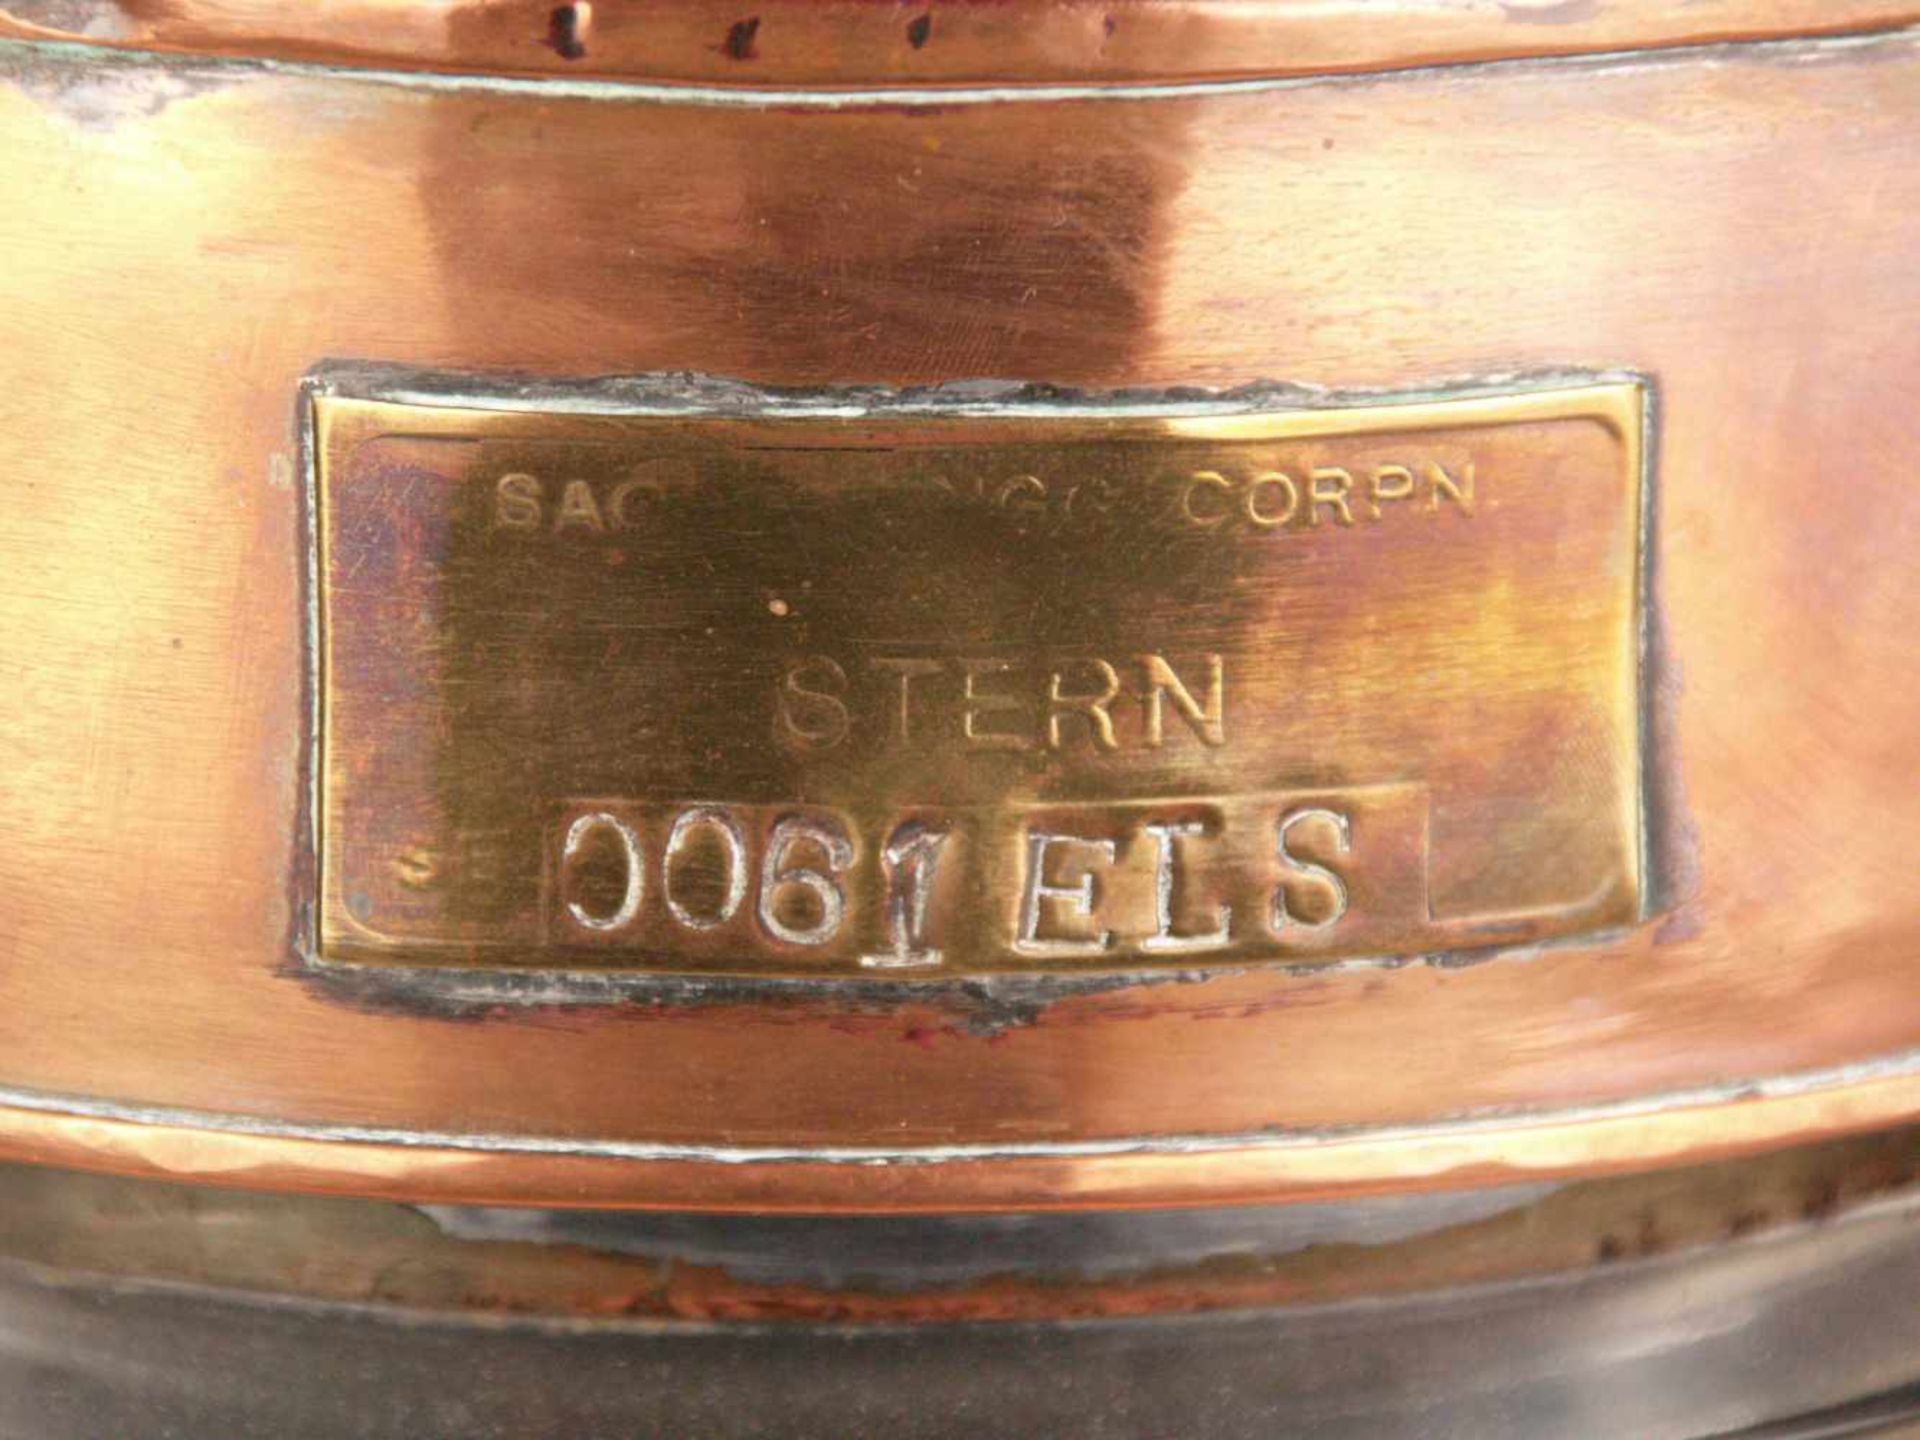 Schiffslaterne "STERN", Nr. '0061ELS', Kupfer/Messing, viertelkreisförmig, Glaszylinder, H.ca. - Bild 3 aus 9